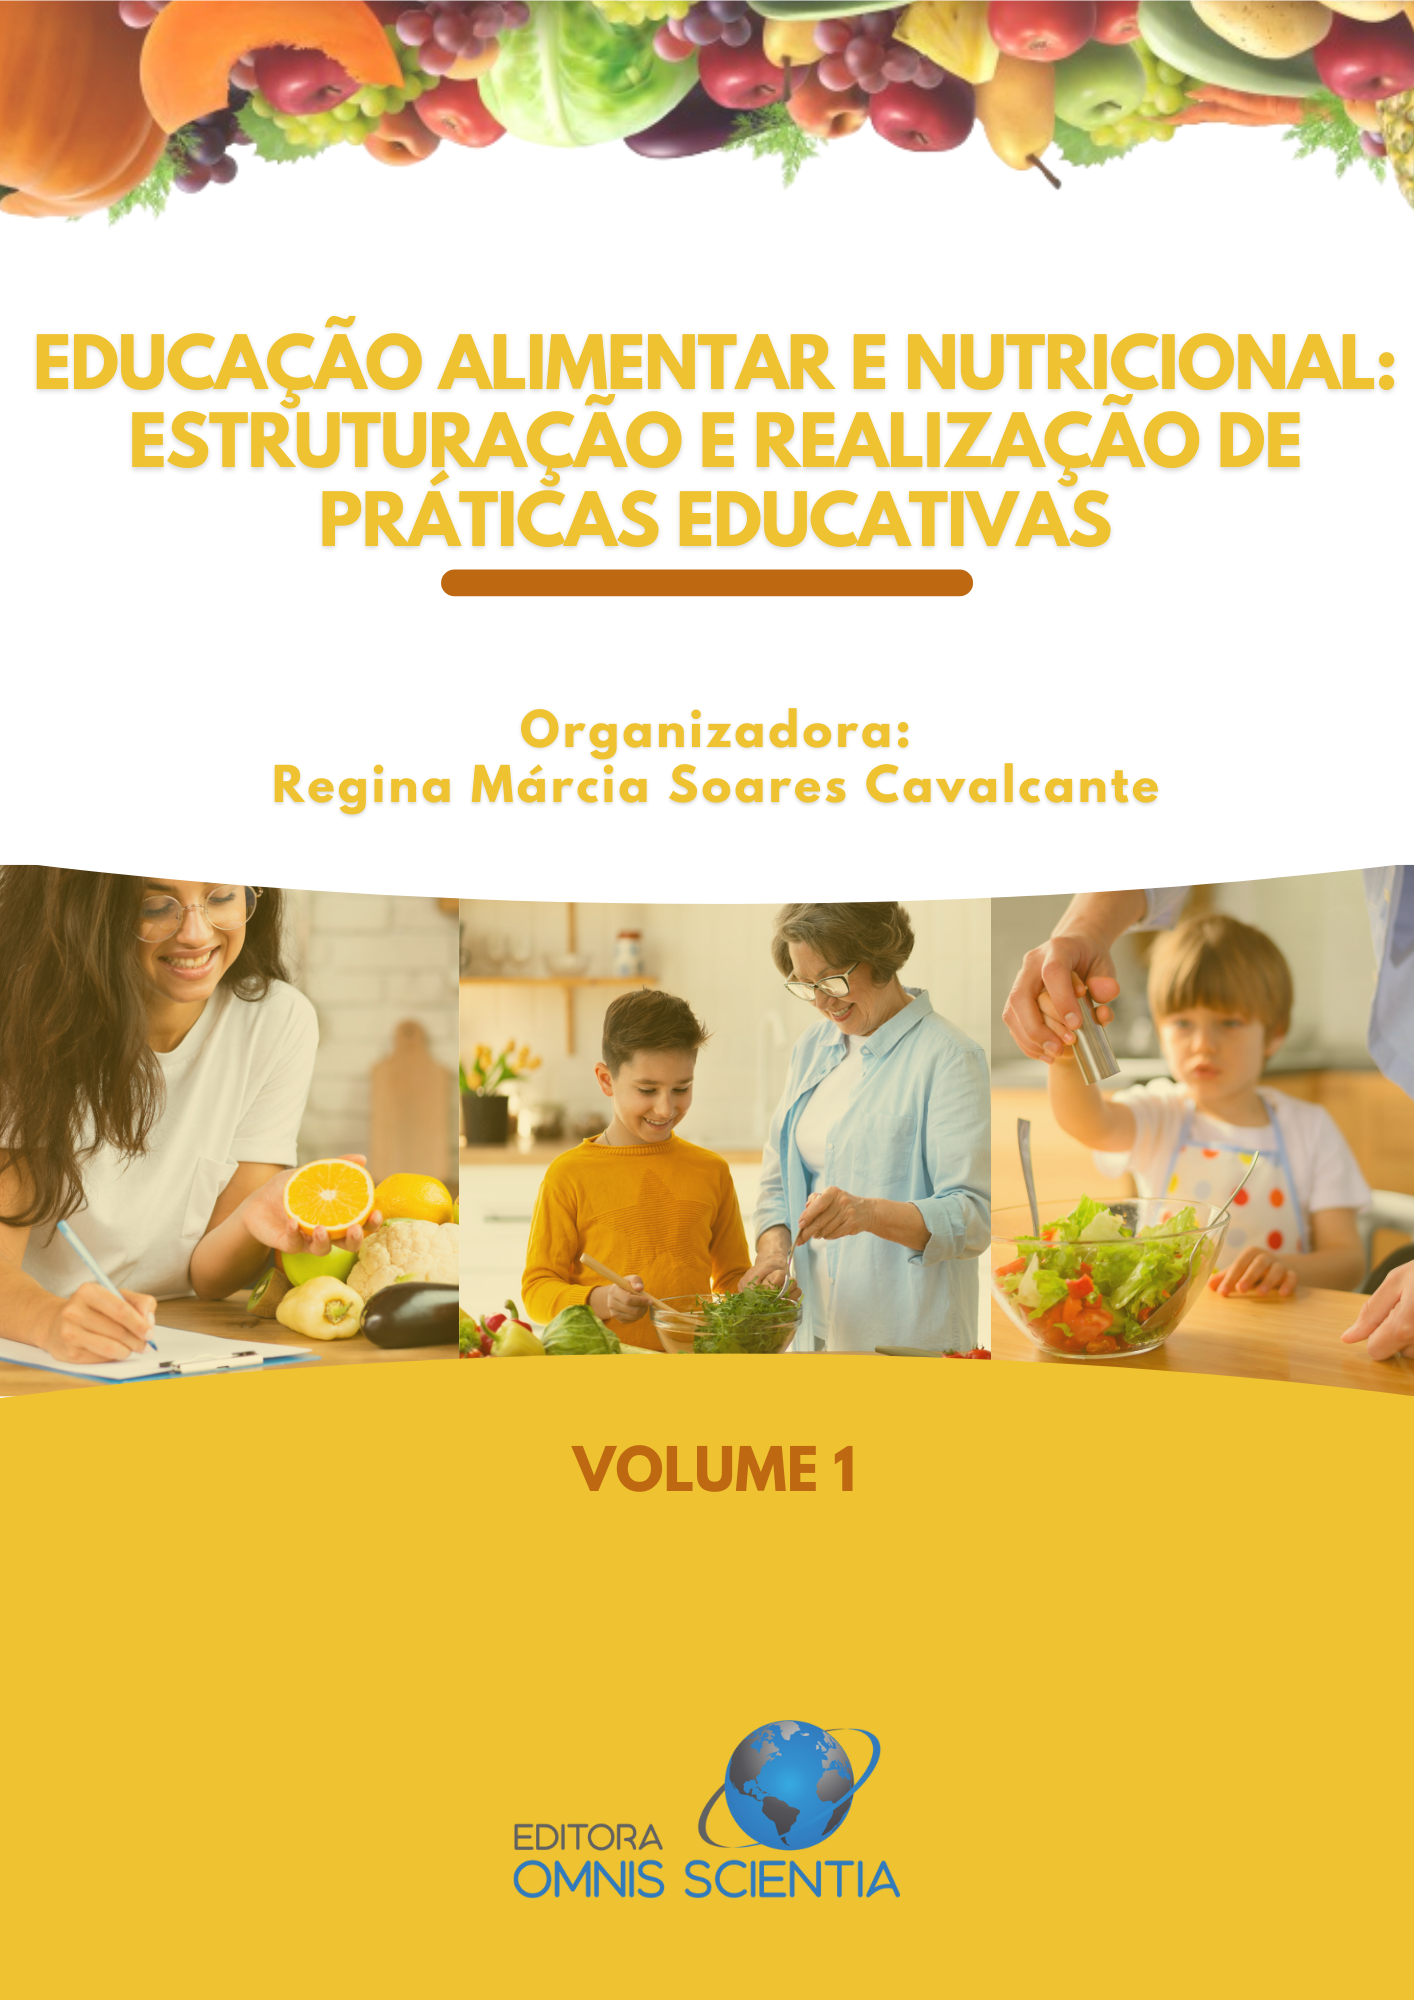 EDUCAÇÃO ALIMENTAR E NUTRICIONAL: ESTRUTURAÇÃO E REALIZAÇÃO DE PRÁTICAS EDUCATIVAS